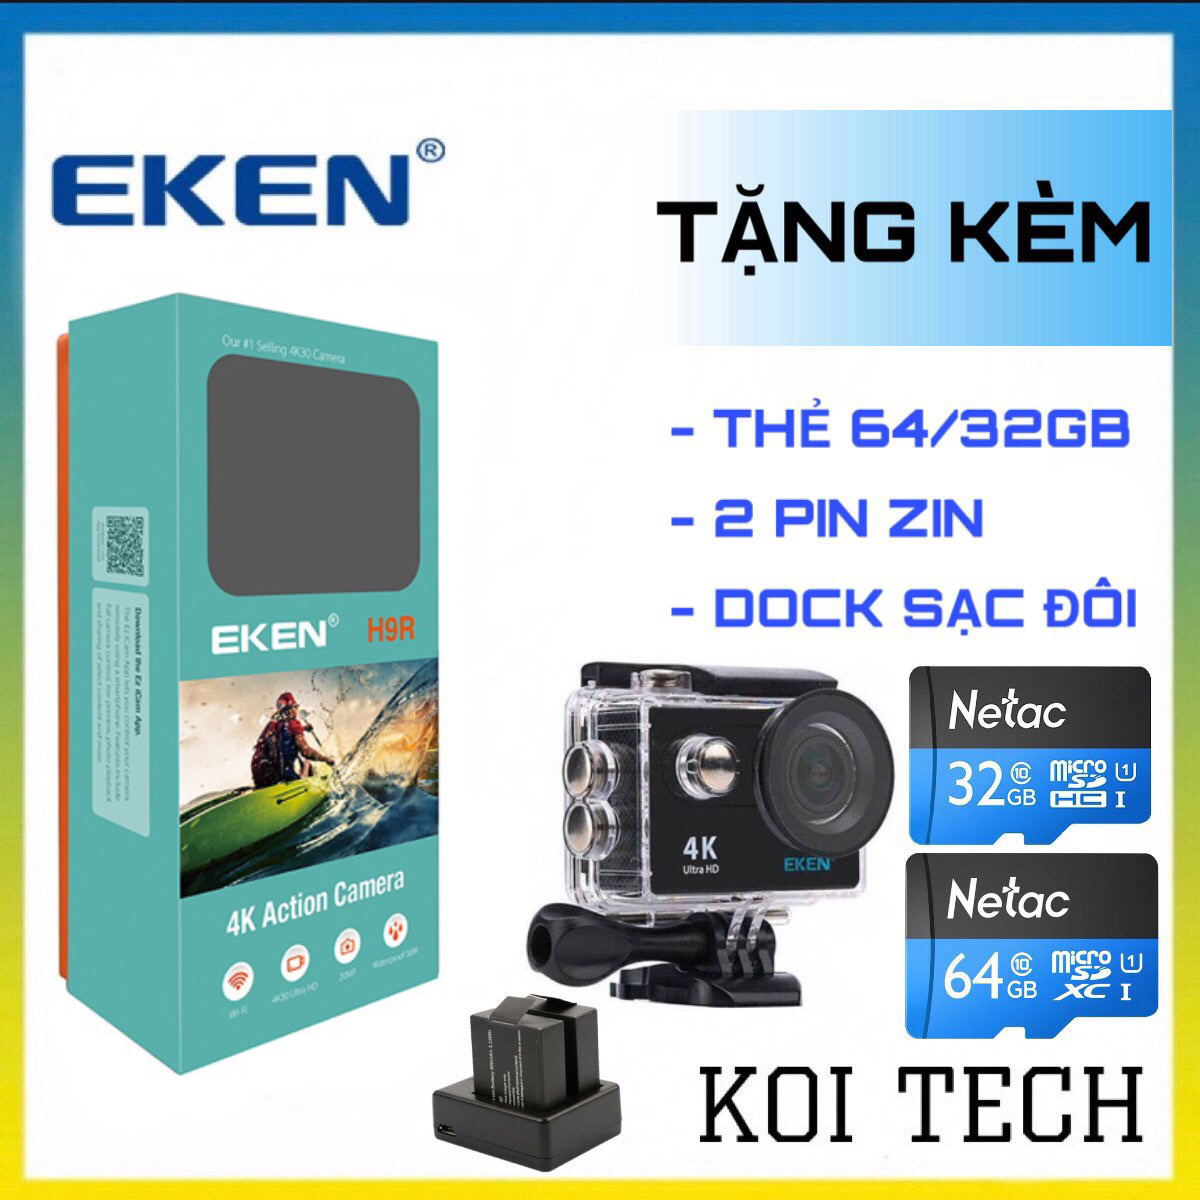 TẶNG THẺ NHỚ 64GB] Camera 4k Eken H9r bản mới V8 nâng cấp 20MP - ảnh đôi 4k: Chụp ảnh cùng với người thương của bạn bằng Camera 4k Eken H9r bản mới V8 siêu nét 20MP. Với khả năng quay video 4K, bạn sẽ có được những khoảnh khắc đẹp và đậm chất cảm xúc. Nhận ngay thẻ nhớ 64GB khi mua sản phẩm này để lưu trữ nhiều hình ảnh đôi 4k tuyệt vời.